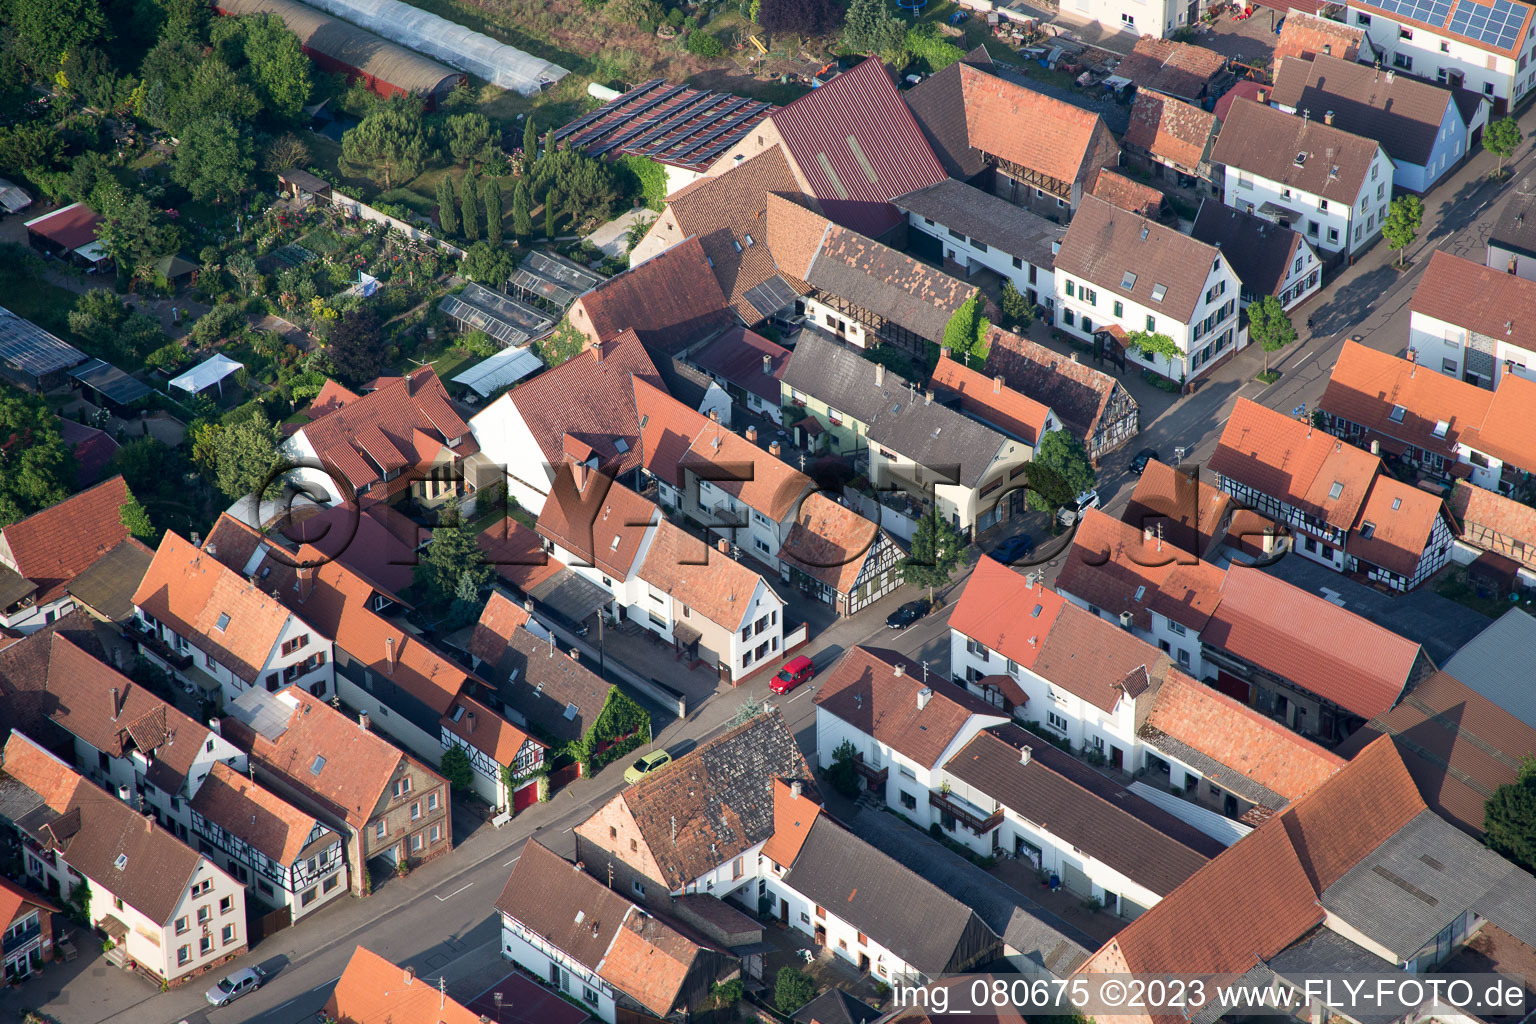 Ottersheim bei Landau im Bundesland Rheinland-Pfalz, Deutschland aus der Drohnenperspektive